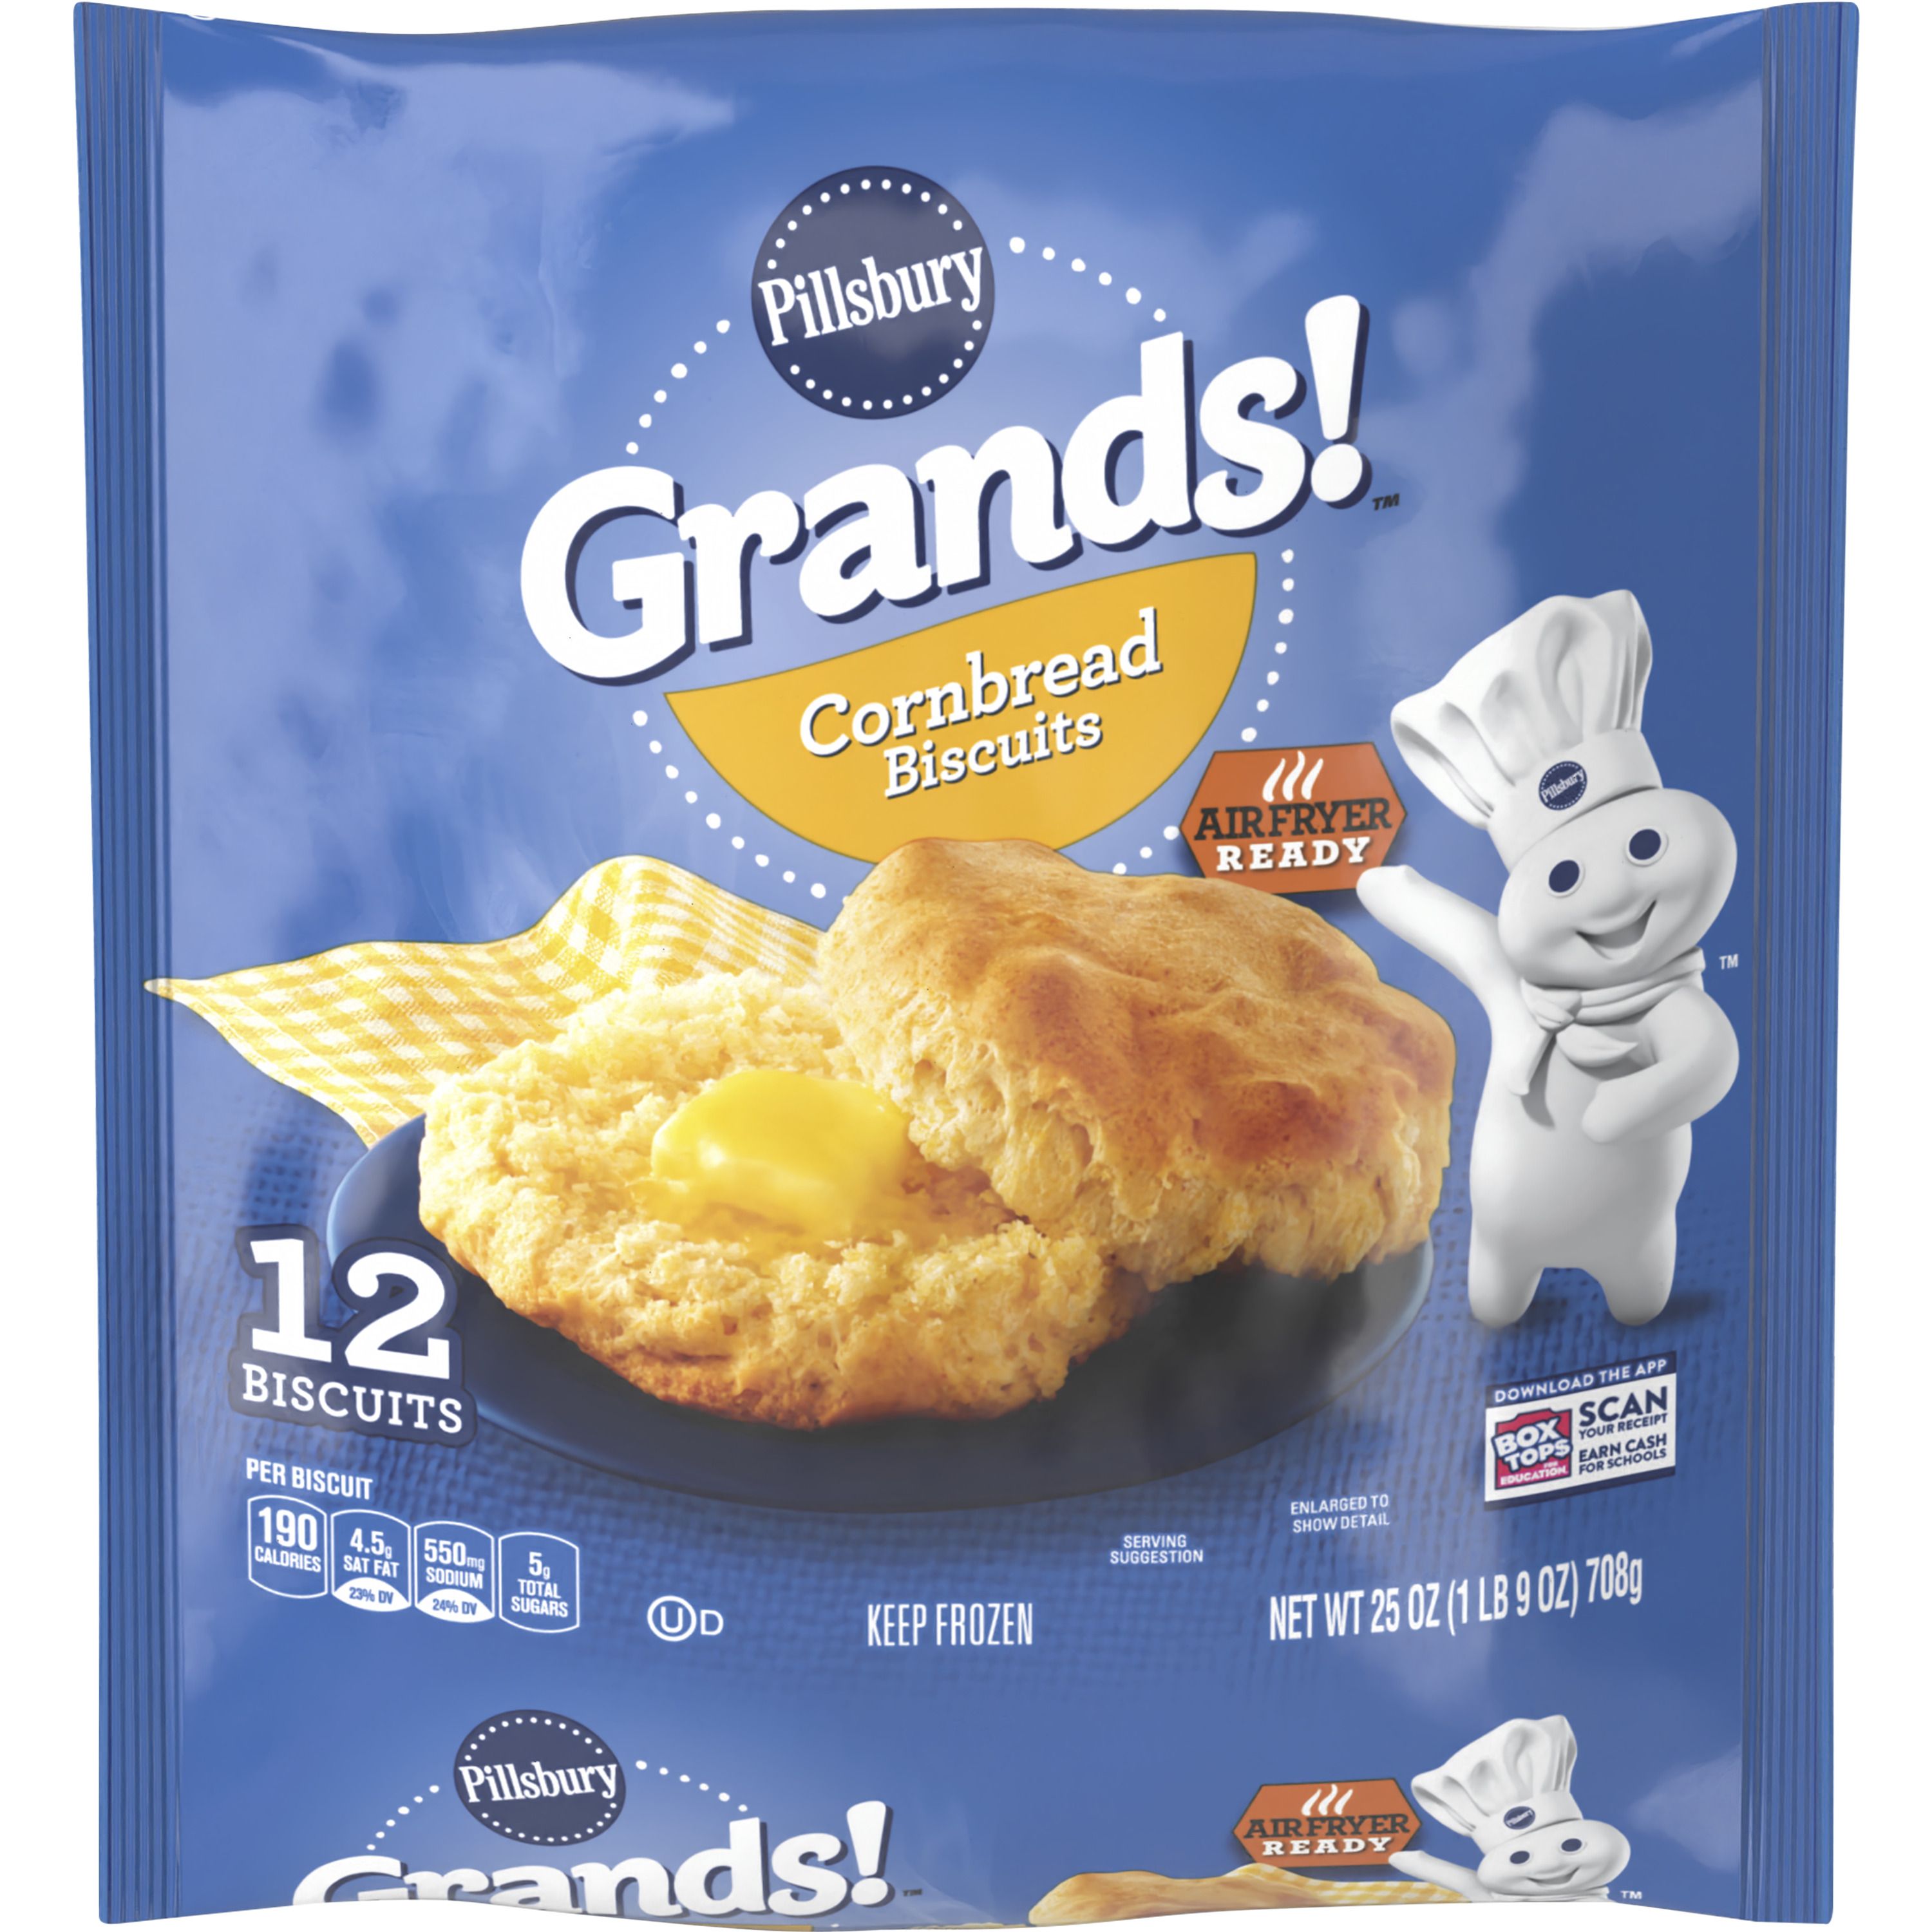 Pillsbury Grands! Cornbread Biscuits, Frozen, 12 Biscuits, 25 oz. - Front